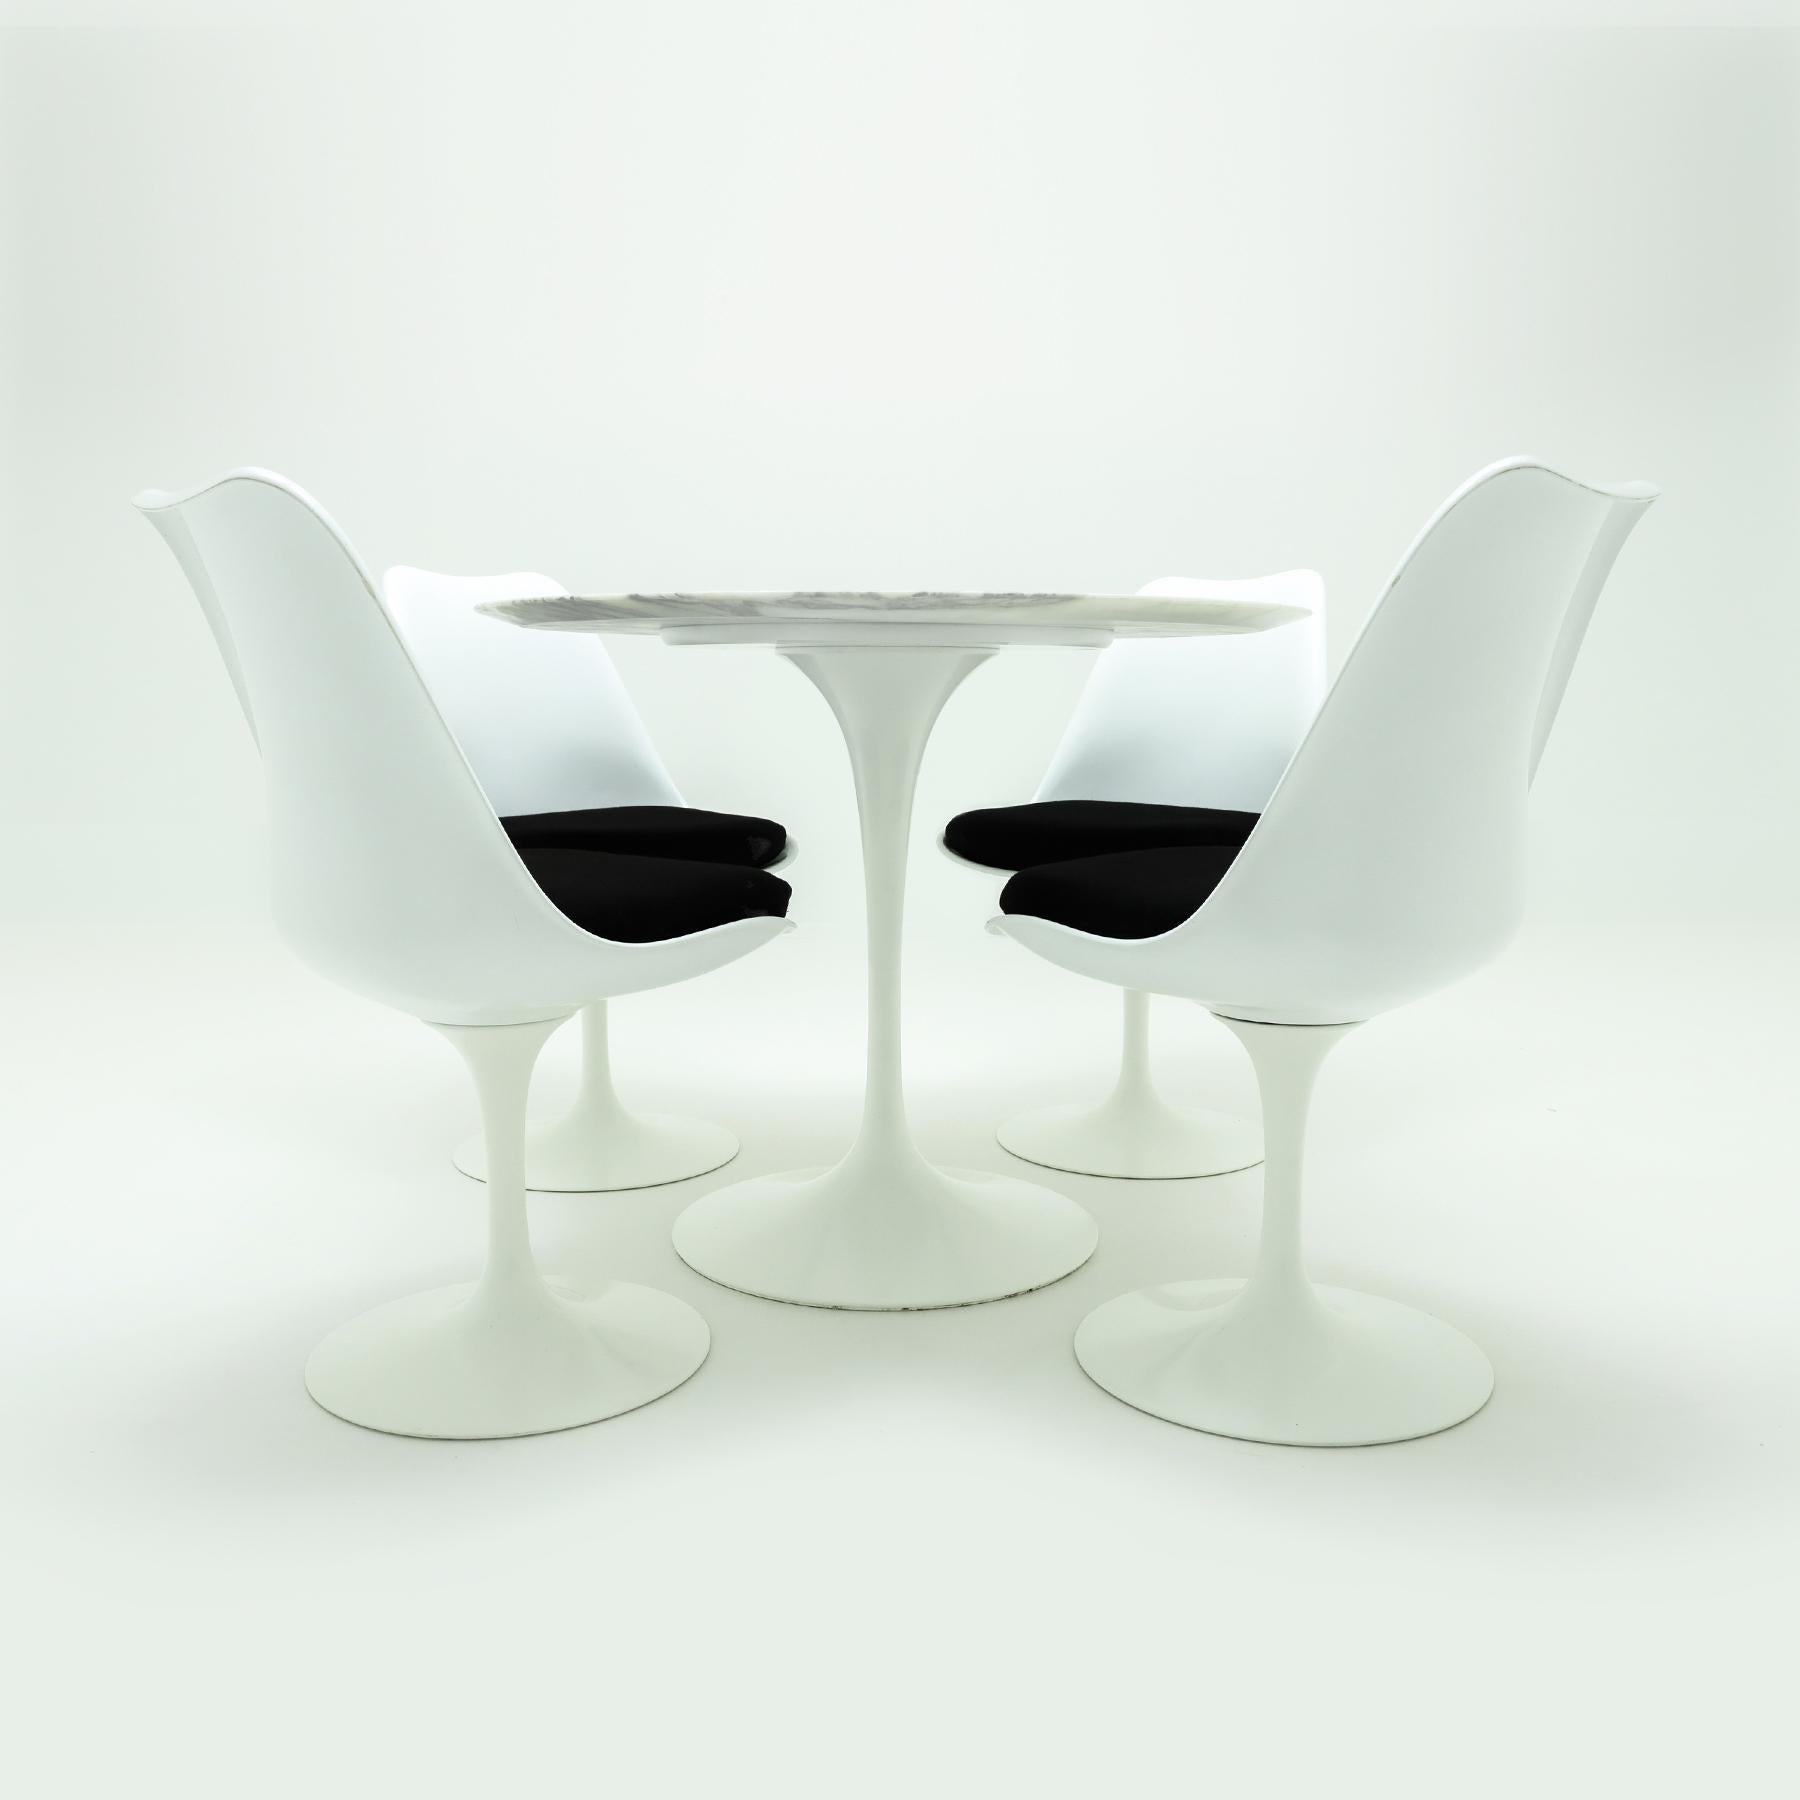 Eine ikonische weiße Tulpen-Essgarnitur von Eero Saarinen, Knoll, mit einer Platte aus Calacatta-Marmor und 4 passenden Tulpenstühlen von Saarinen, Knoll, mit den originalen Sitzpads und Bezügen. 

Es handelt sich um eine klassische und ikonische